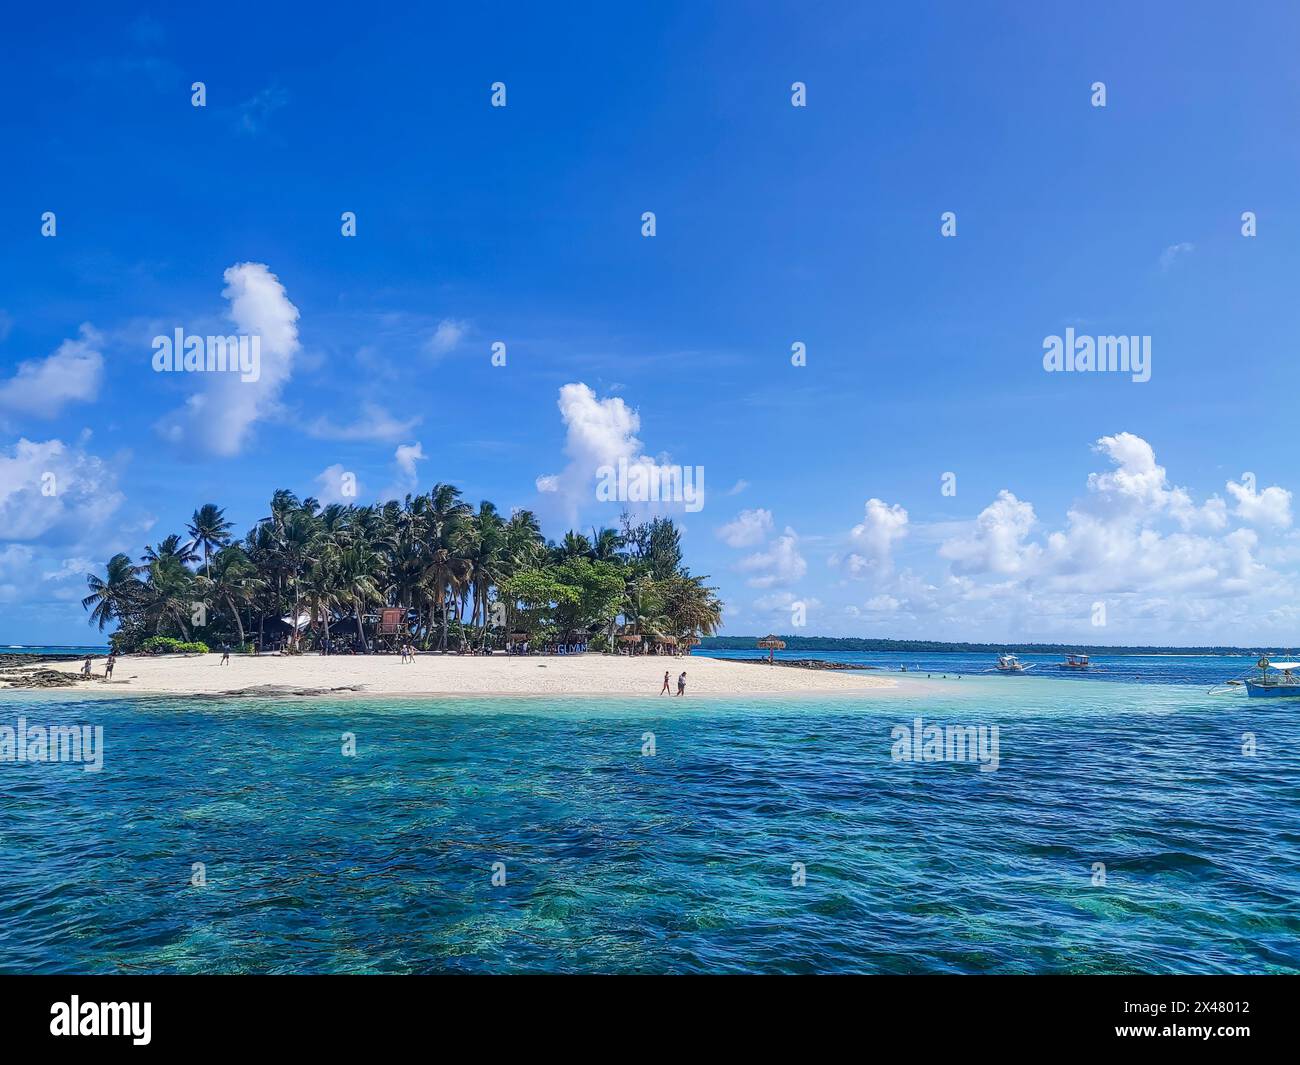 Turisti su una piccola isola di Siargao, Mindanao, Filippine, con acque turchesi incredibilmente chiare e trasparenti. Foto Stock